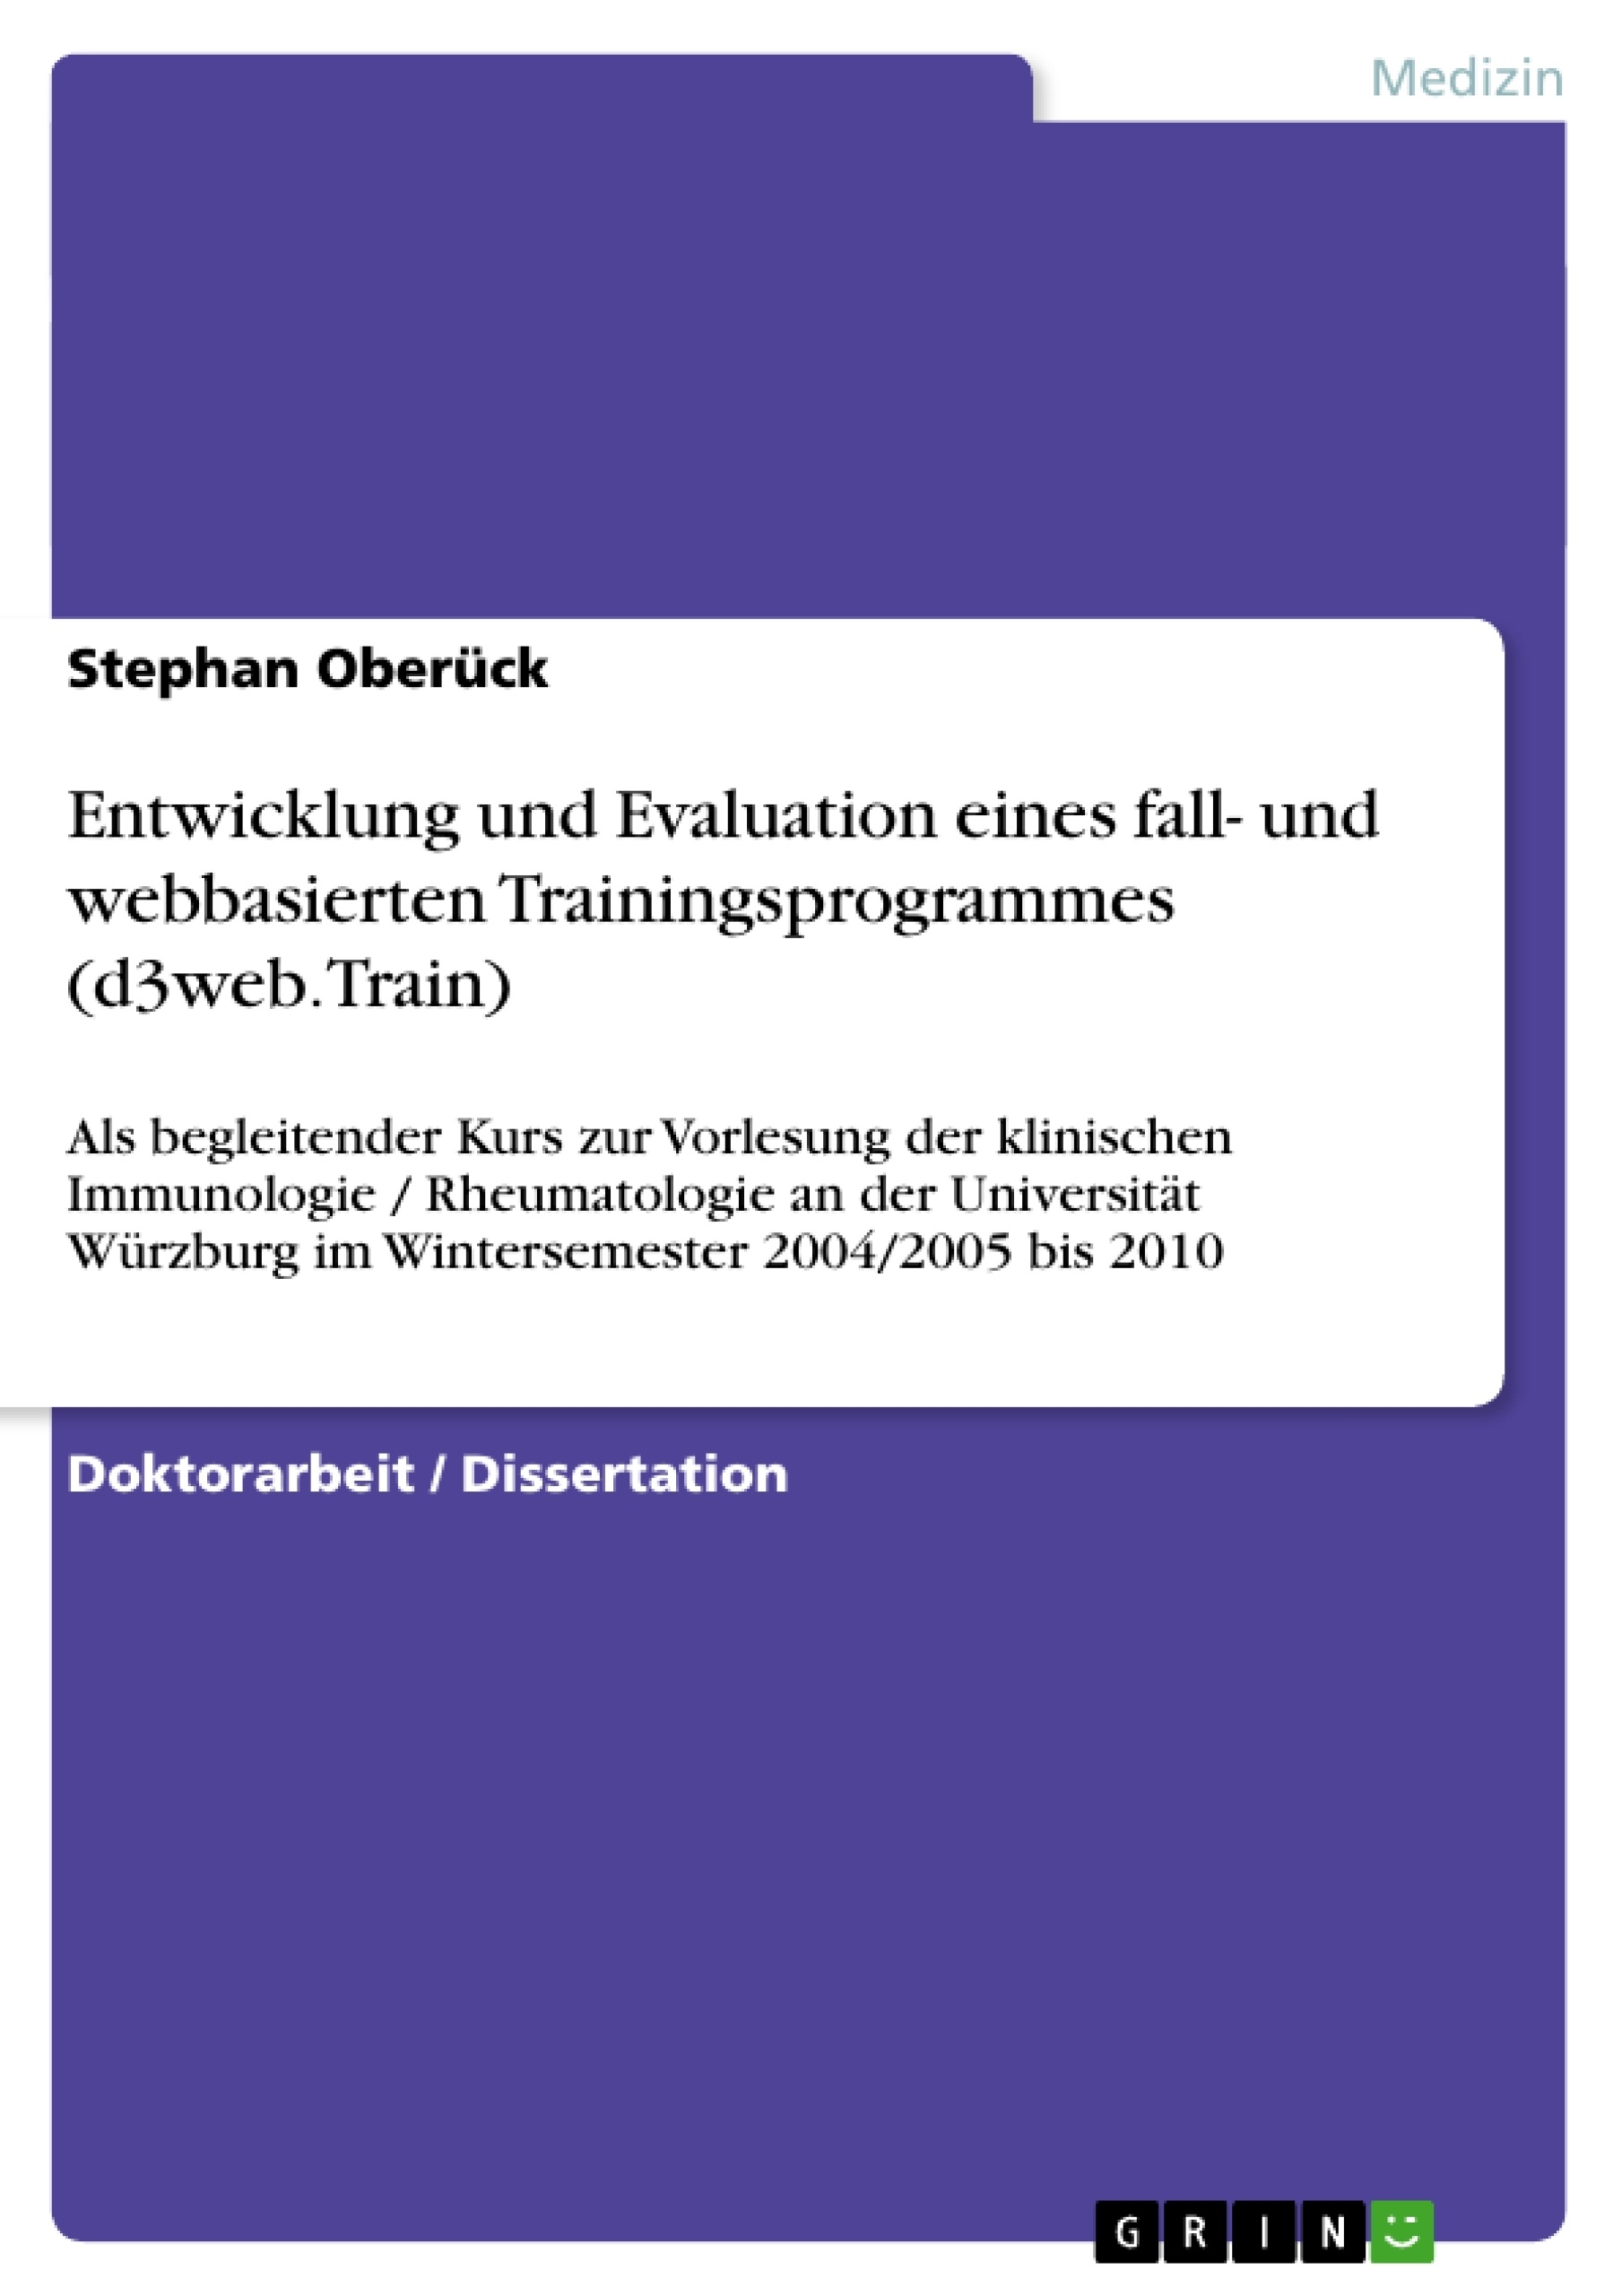 Title: Entwicklung und Evaluation eines fall- und webbasierten Trainingsprogrammes (d3web.Train)